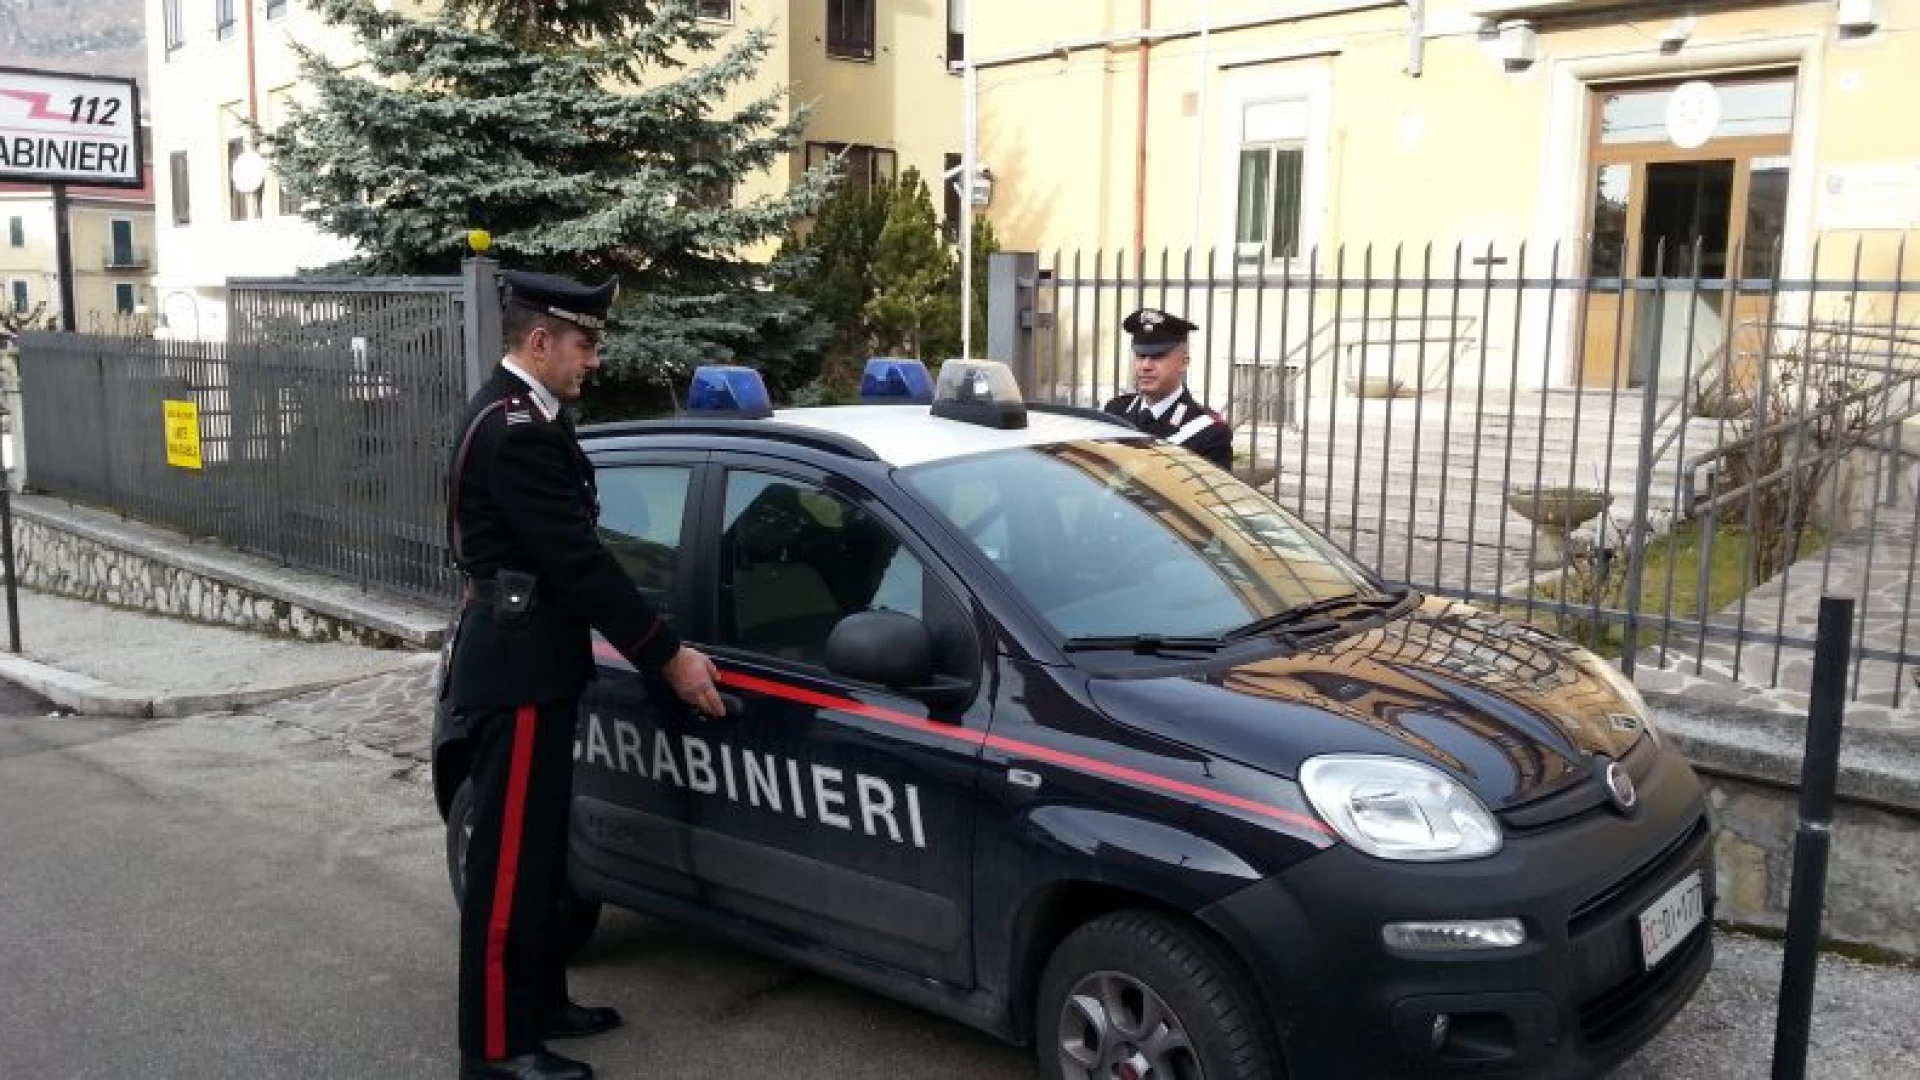 Condannato per fatti di droga: i carabinieri lo riportano in carcere